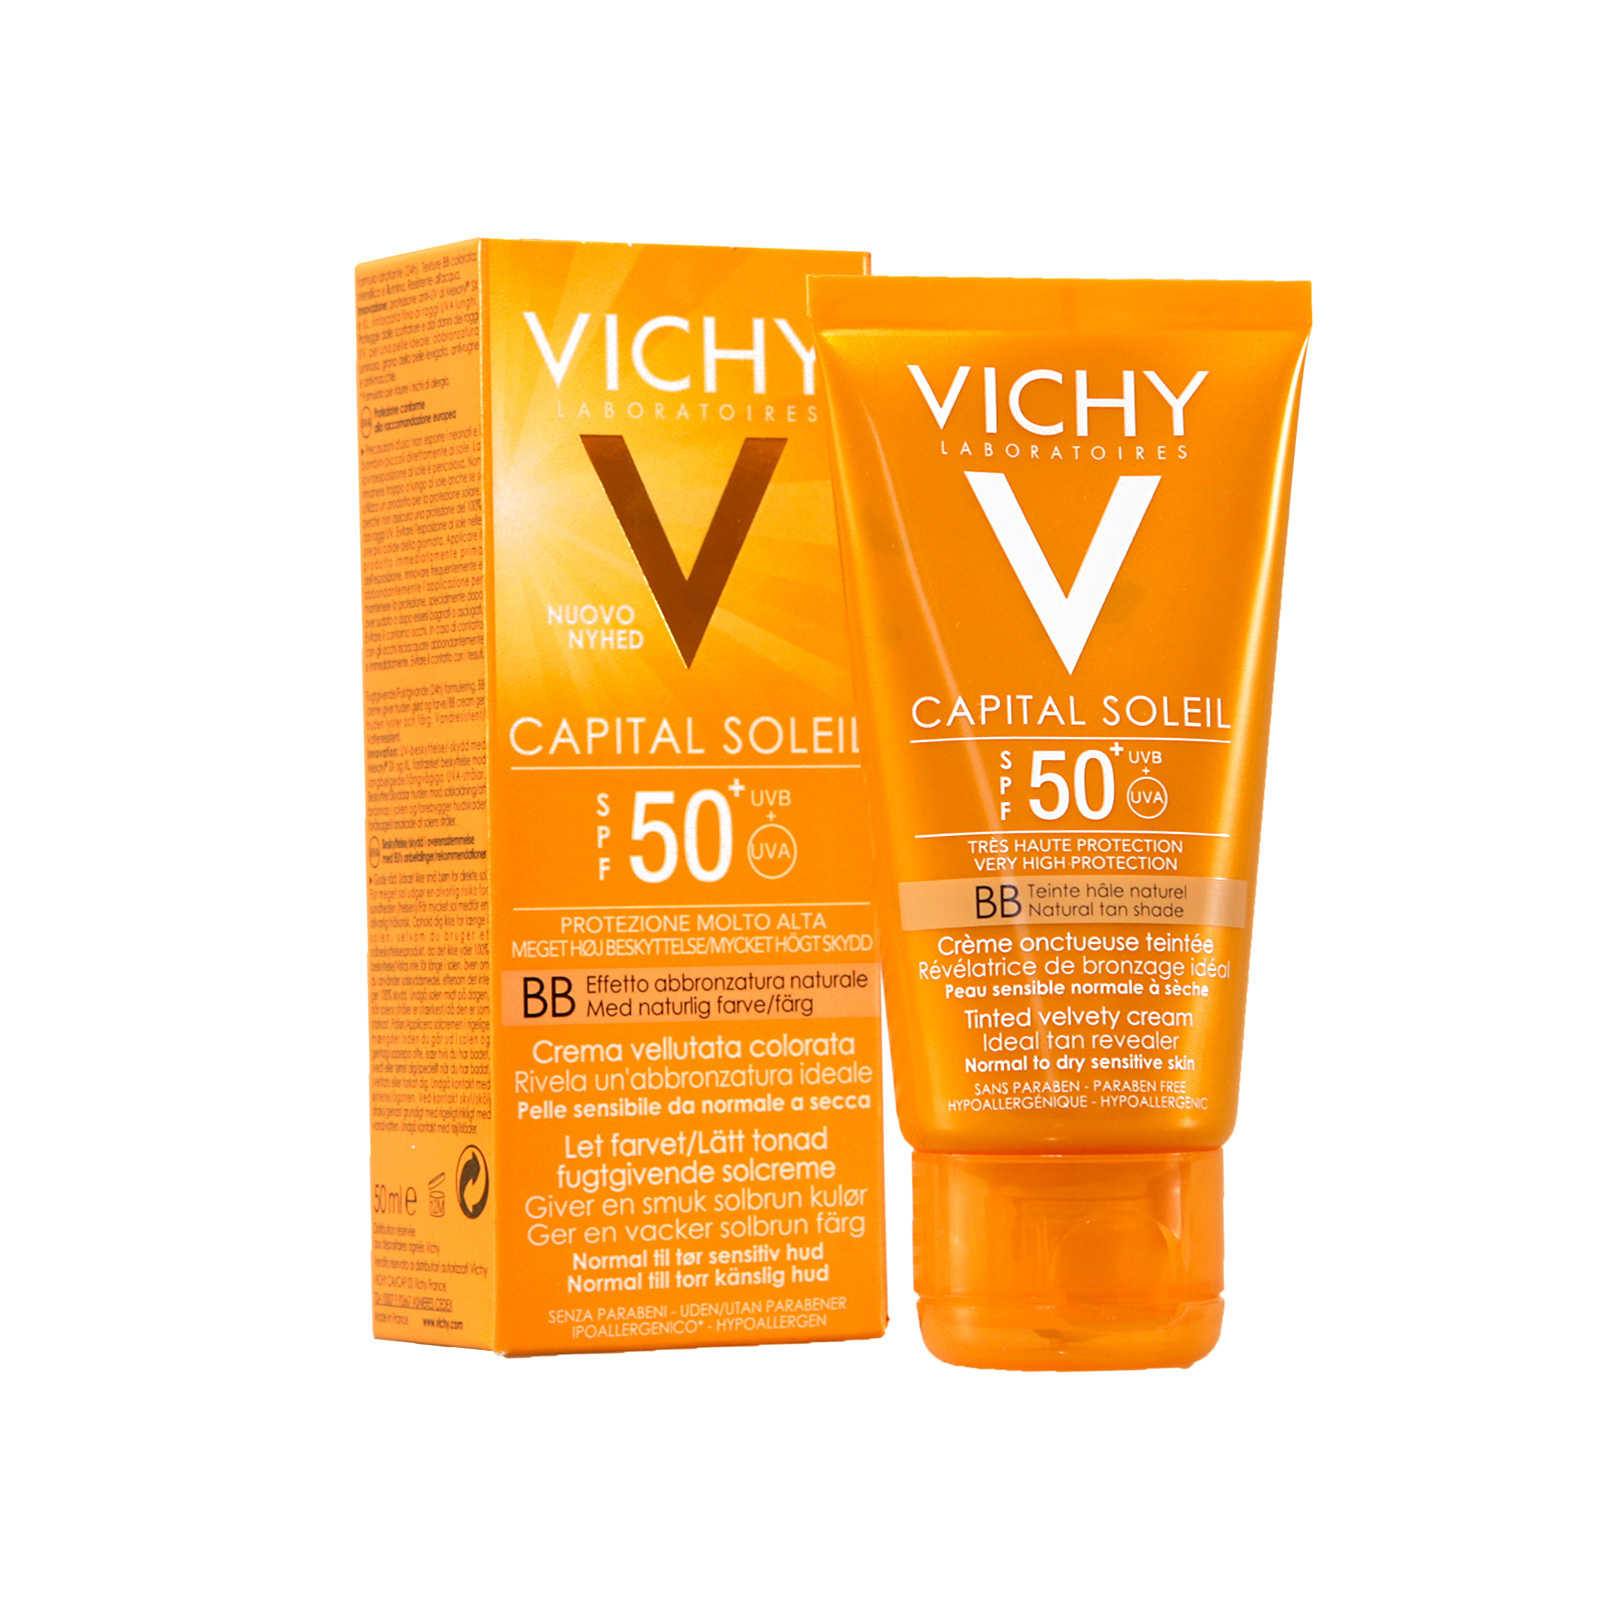 Vichy capital ideal soleil spf 50. Vichy SPF 50. Vichy СПФ 50. Vichy Capital Soleil SPF 50. Cc Vichy.